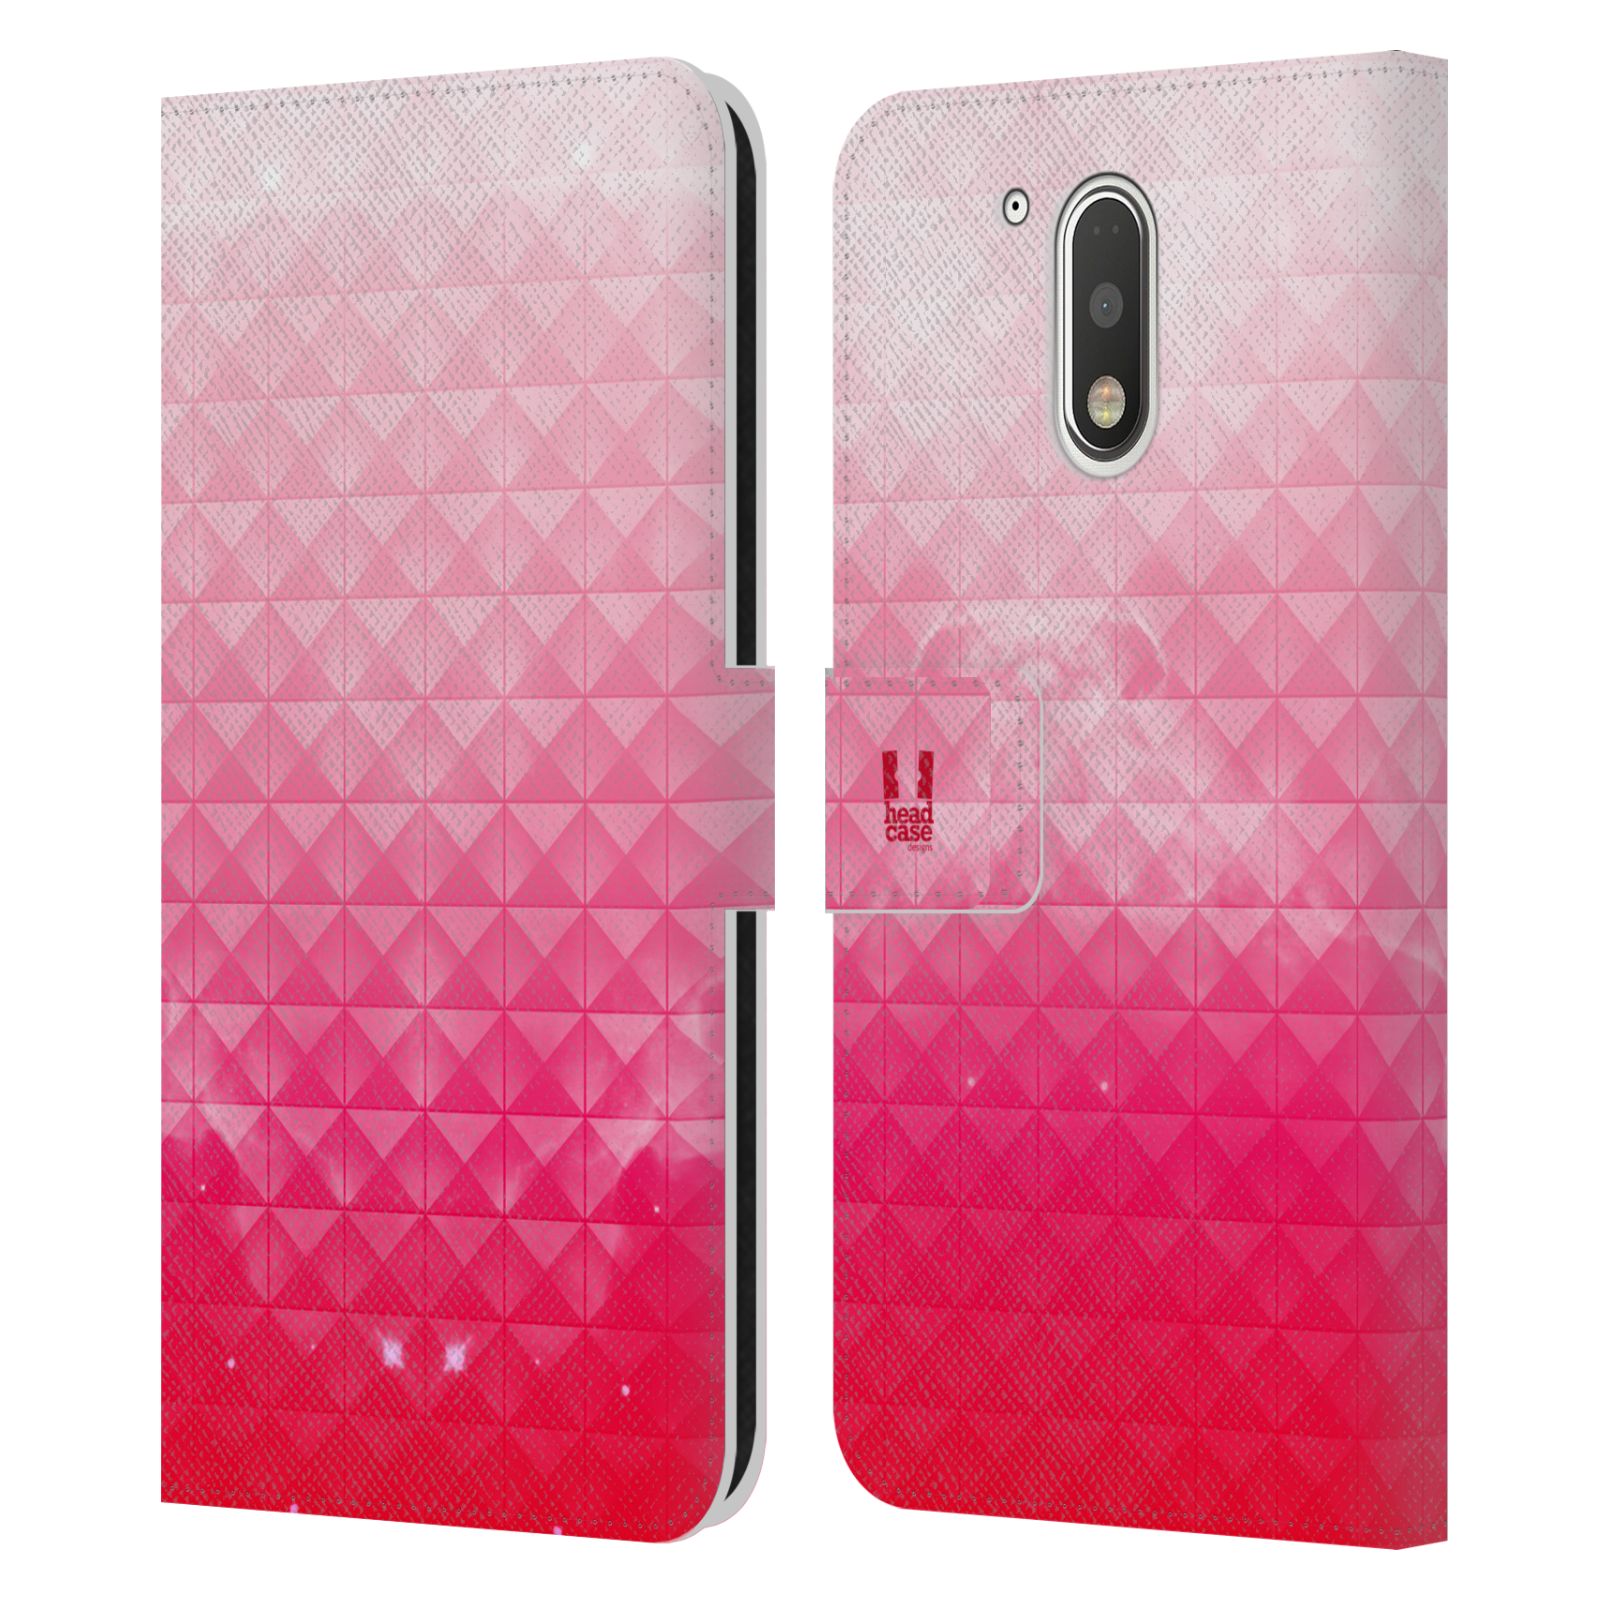 Pouzdro HEAD CASE na mobil Motorola Moto G41 barevná vesmírná mlhovina růžová jahoda